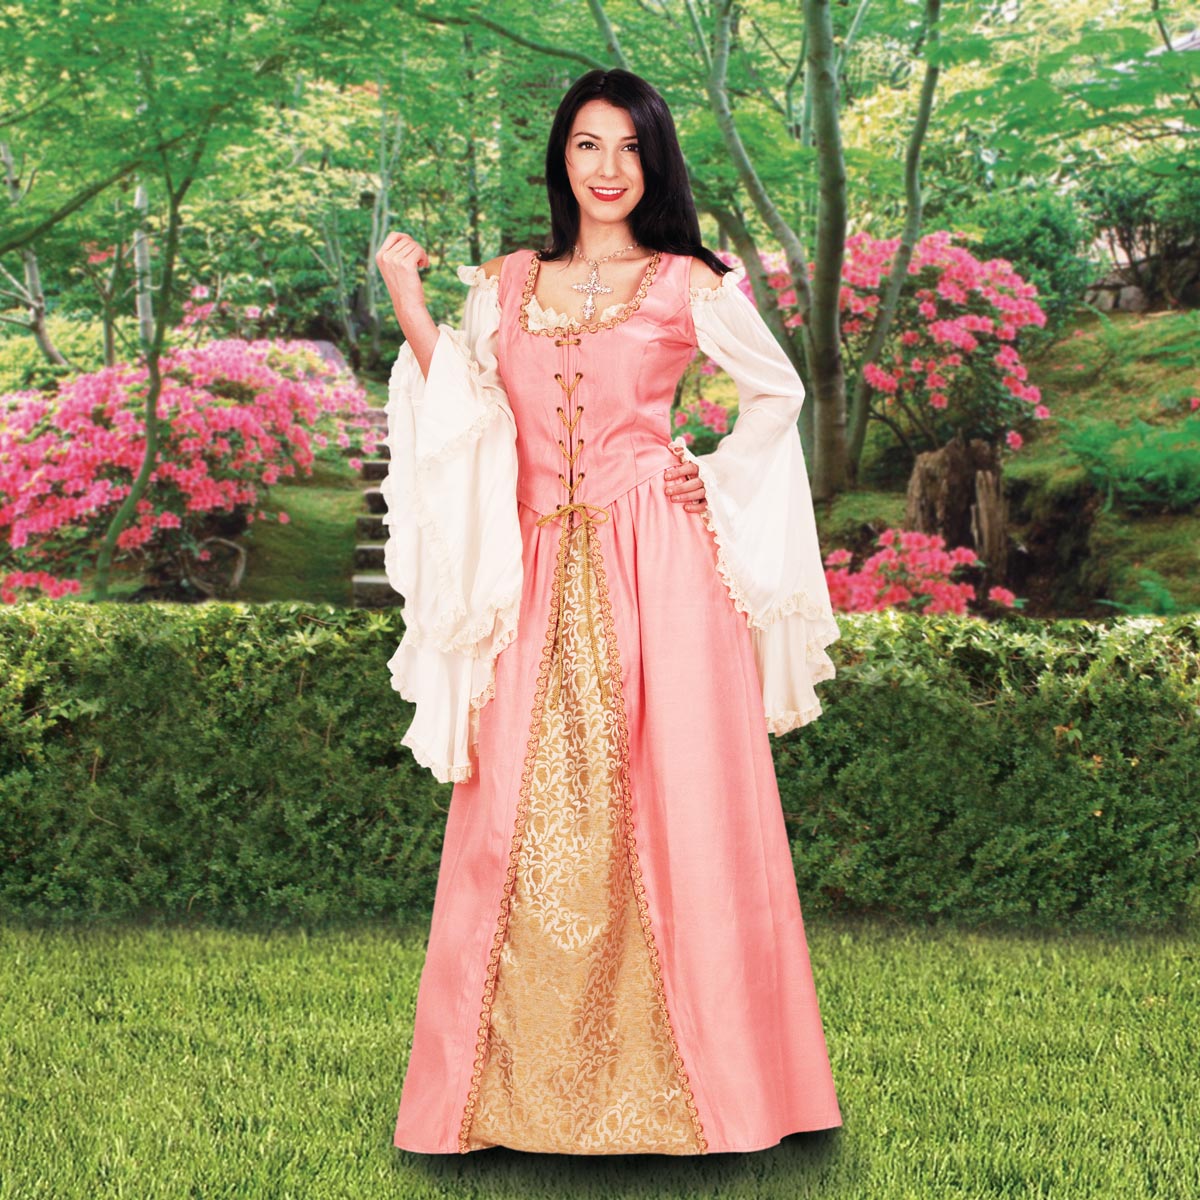 Avington Nobles Gown, Pink, Size XL